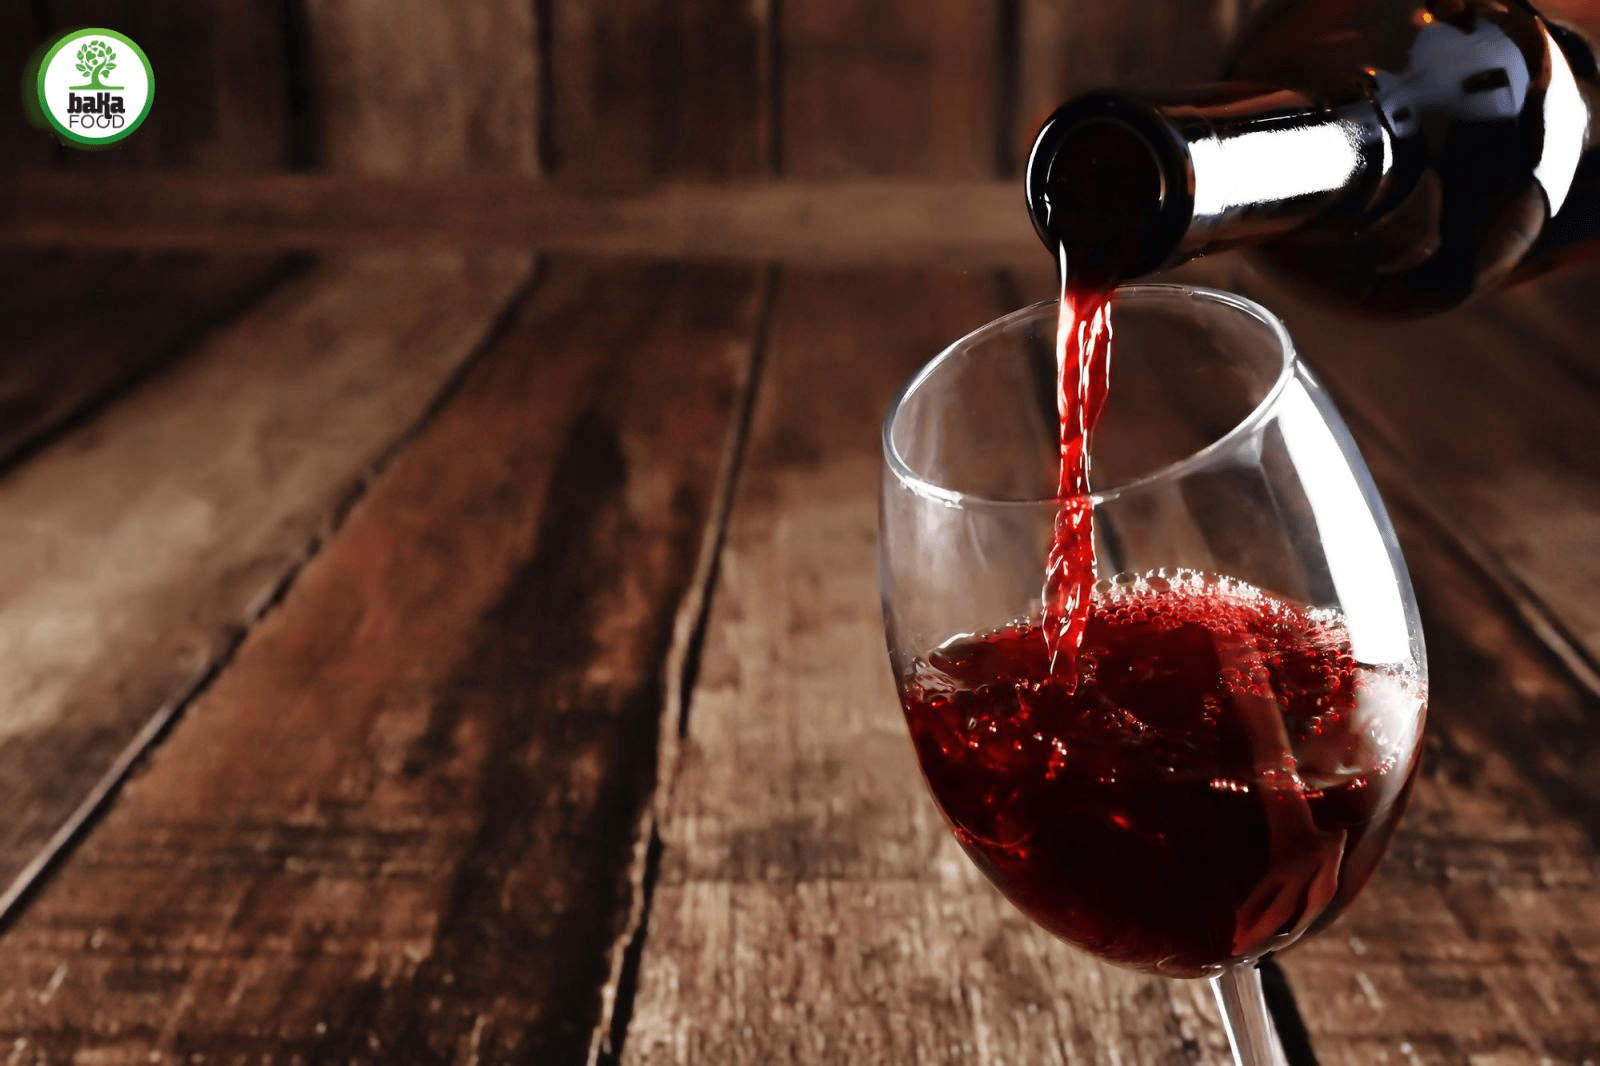 Sắc đỏ của rượu vang mang tới may mắn, hạnh phúc trong dịp năm mới 